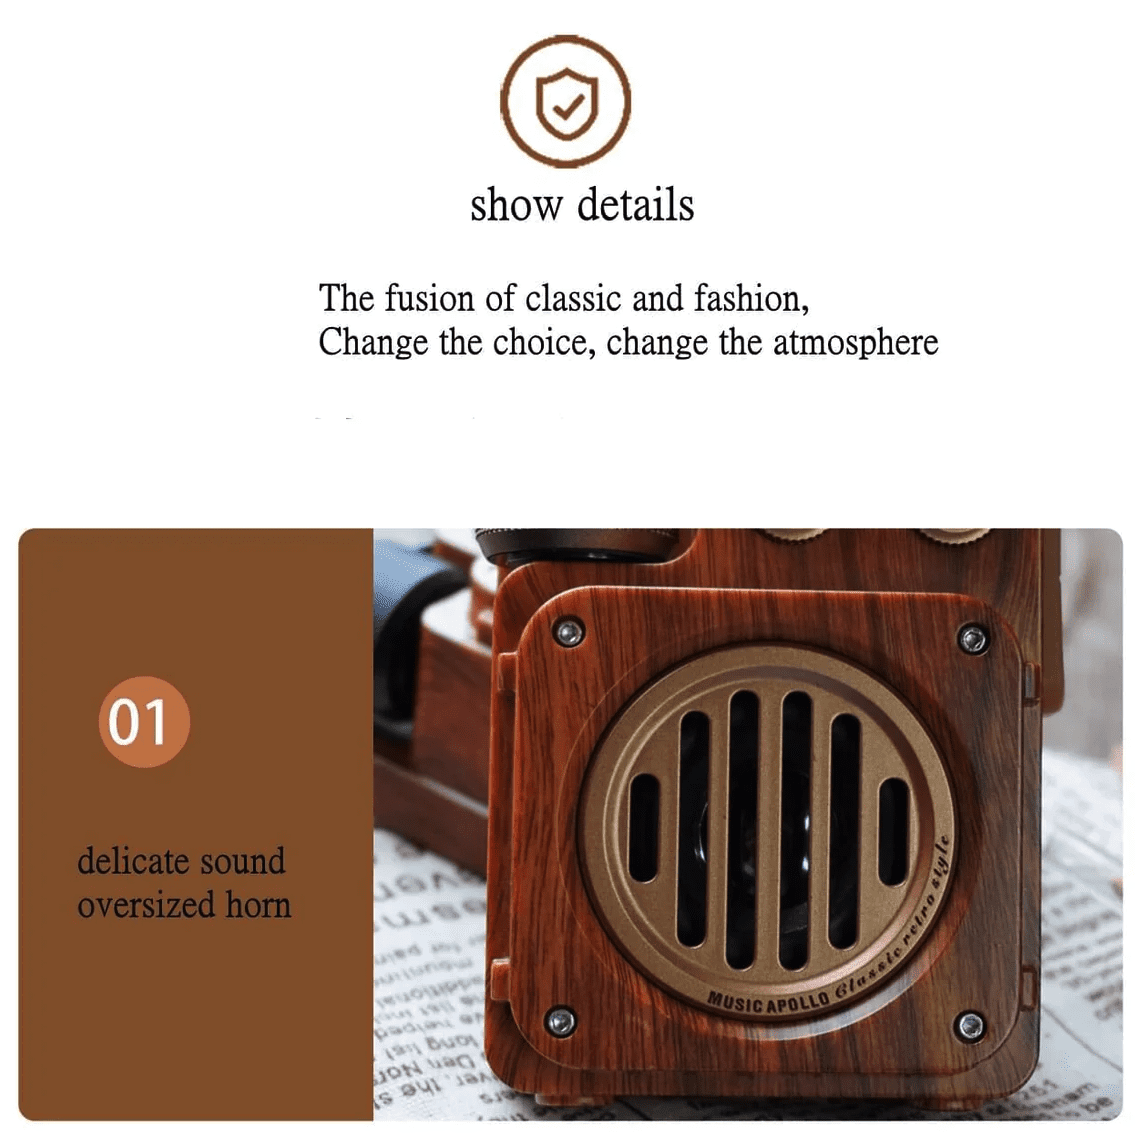 Radio hecha de madera con diseño de receptor retro vintage.